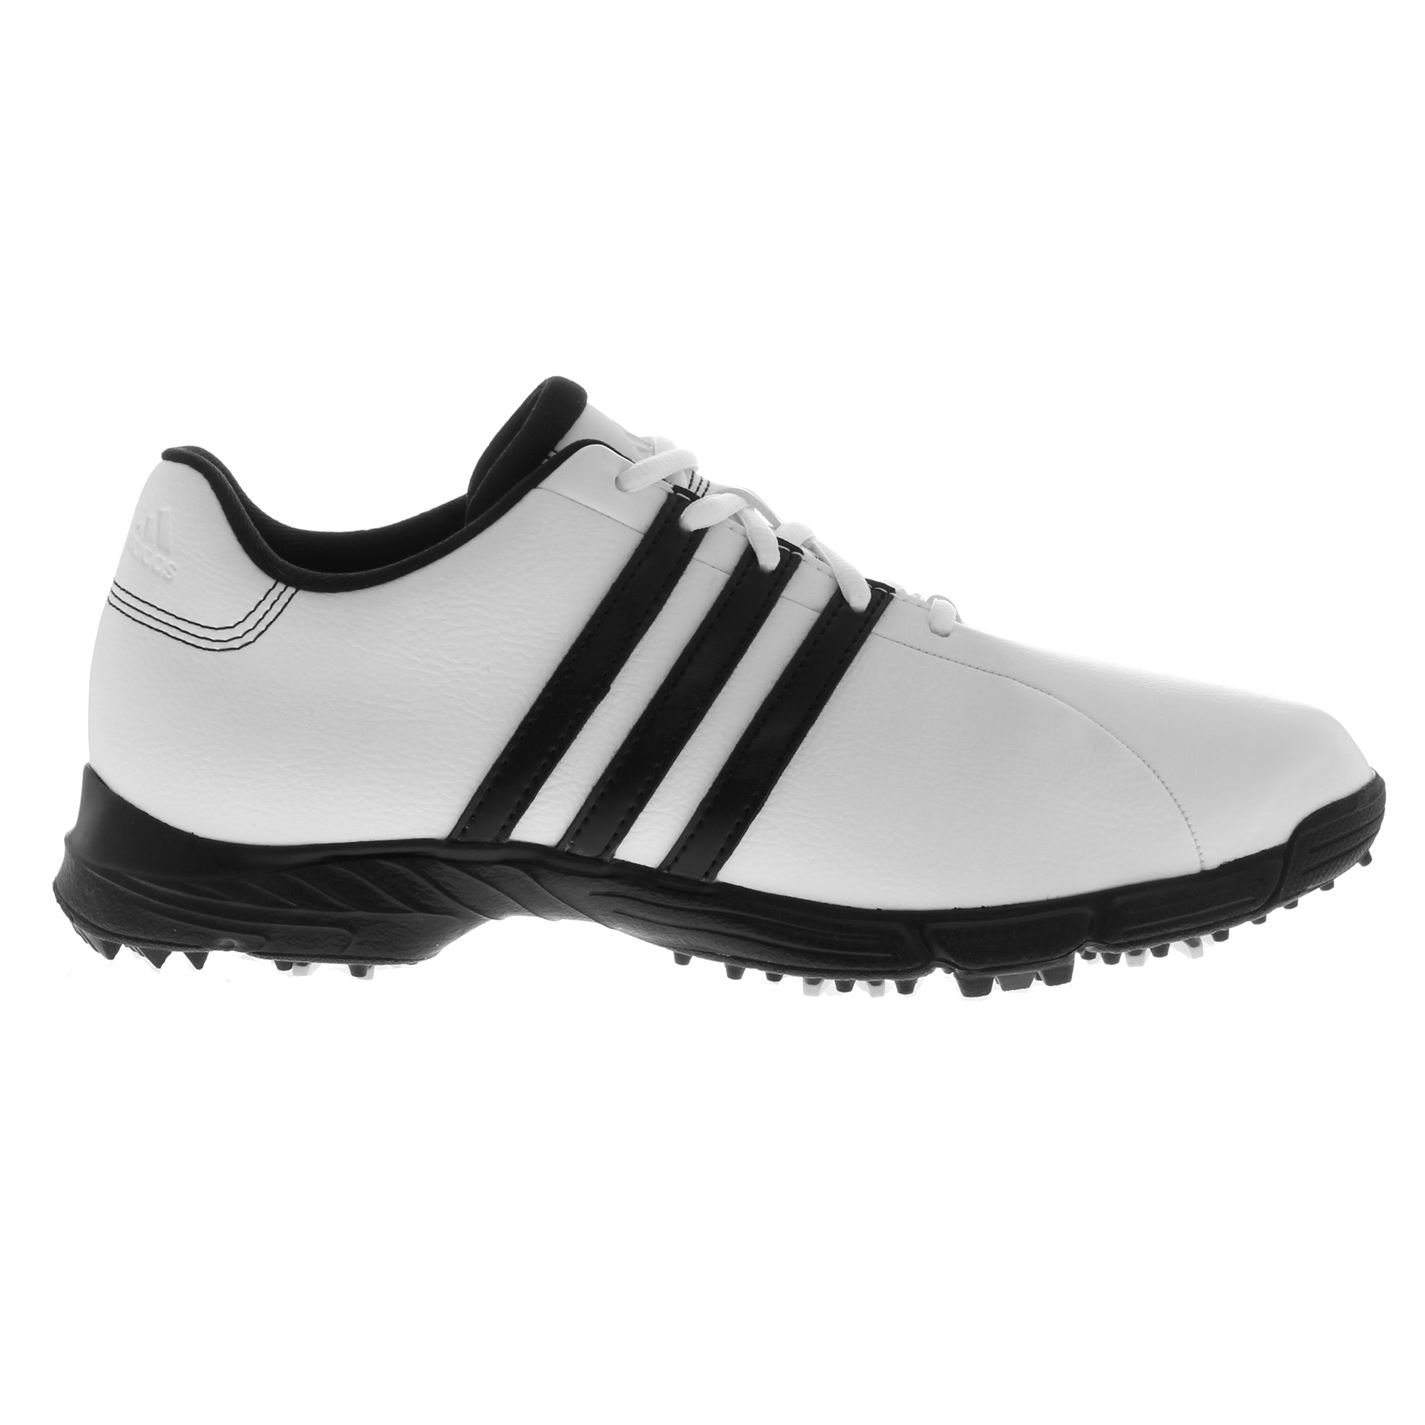 Adidas Golflite Mens Golf Shoes